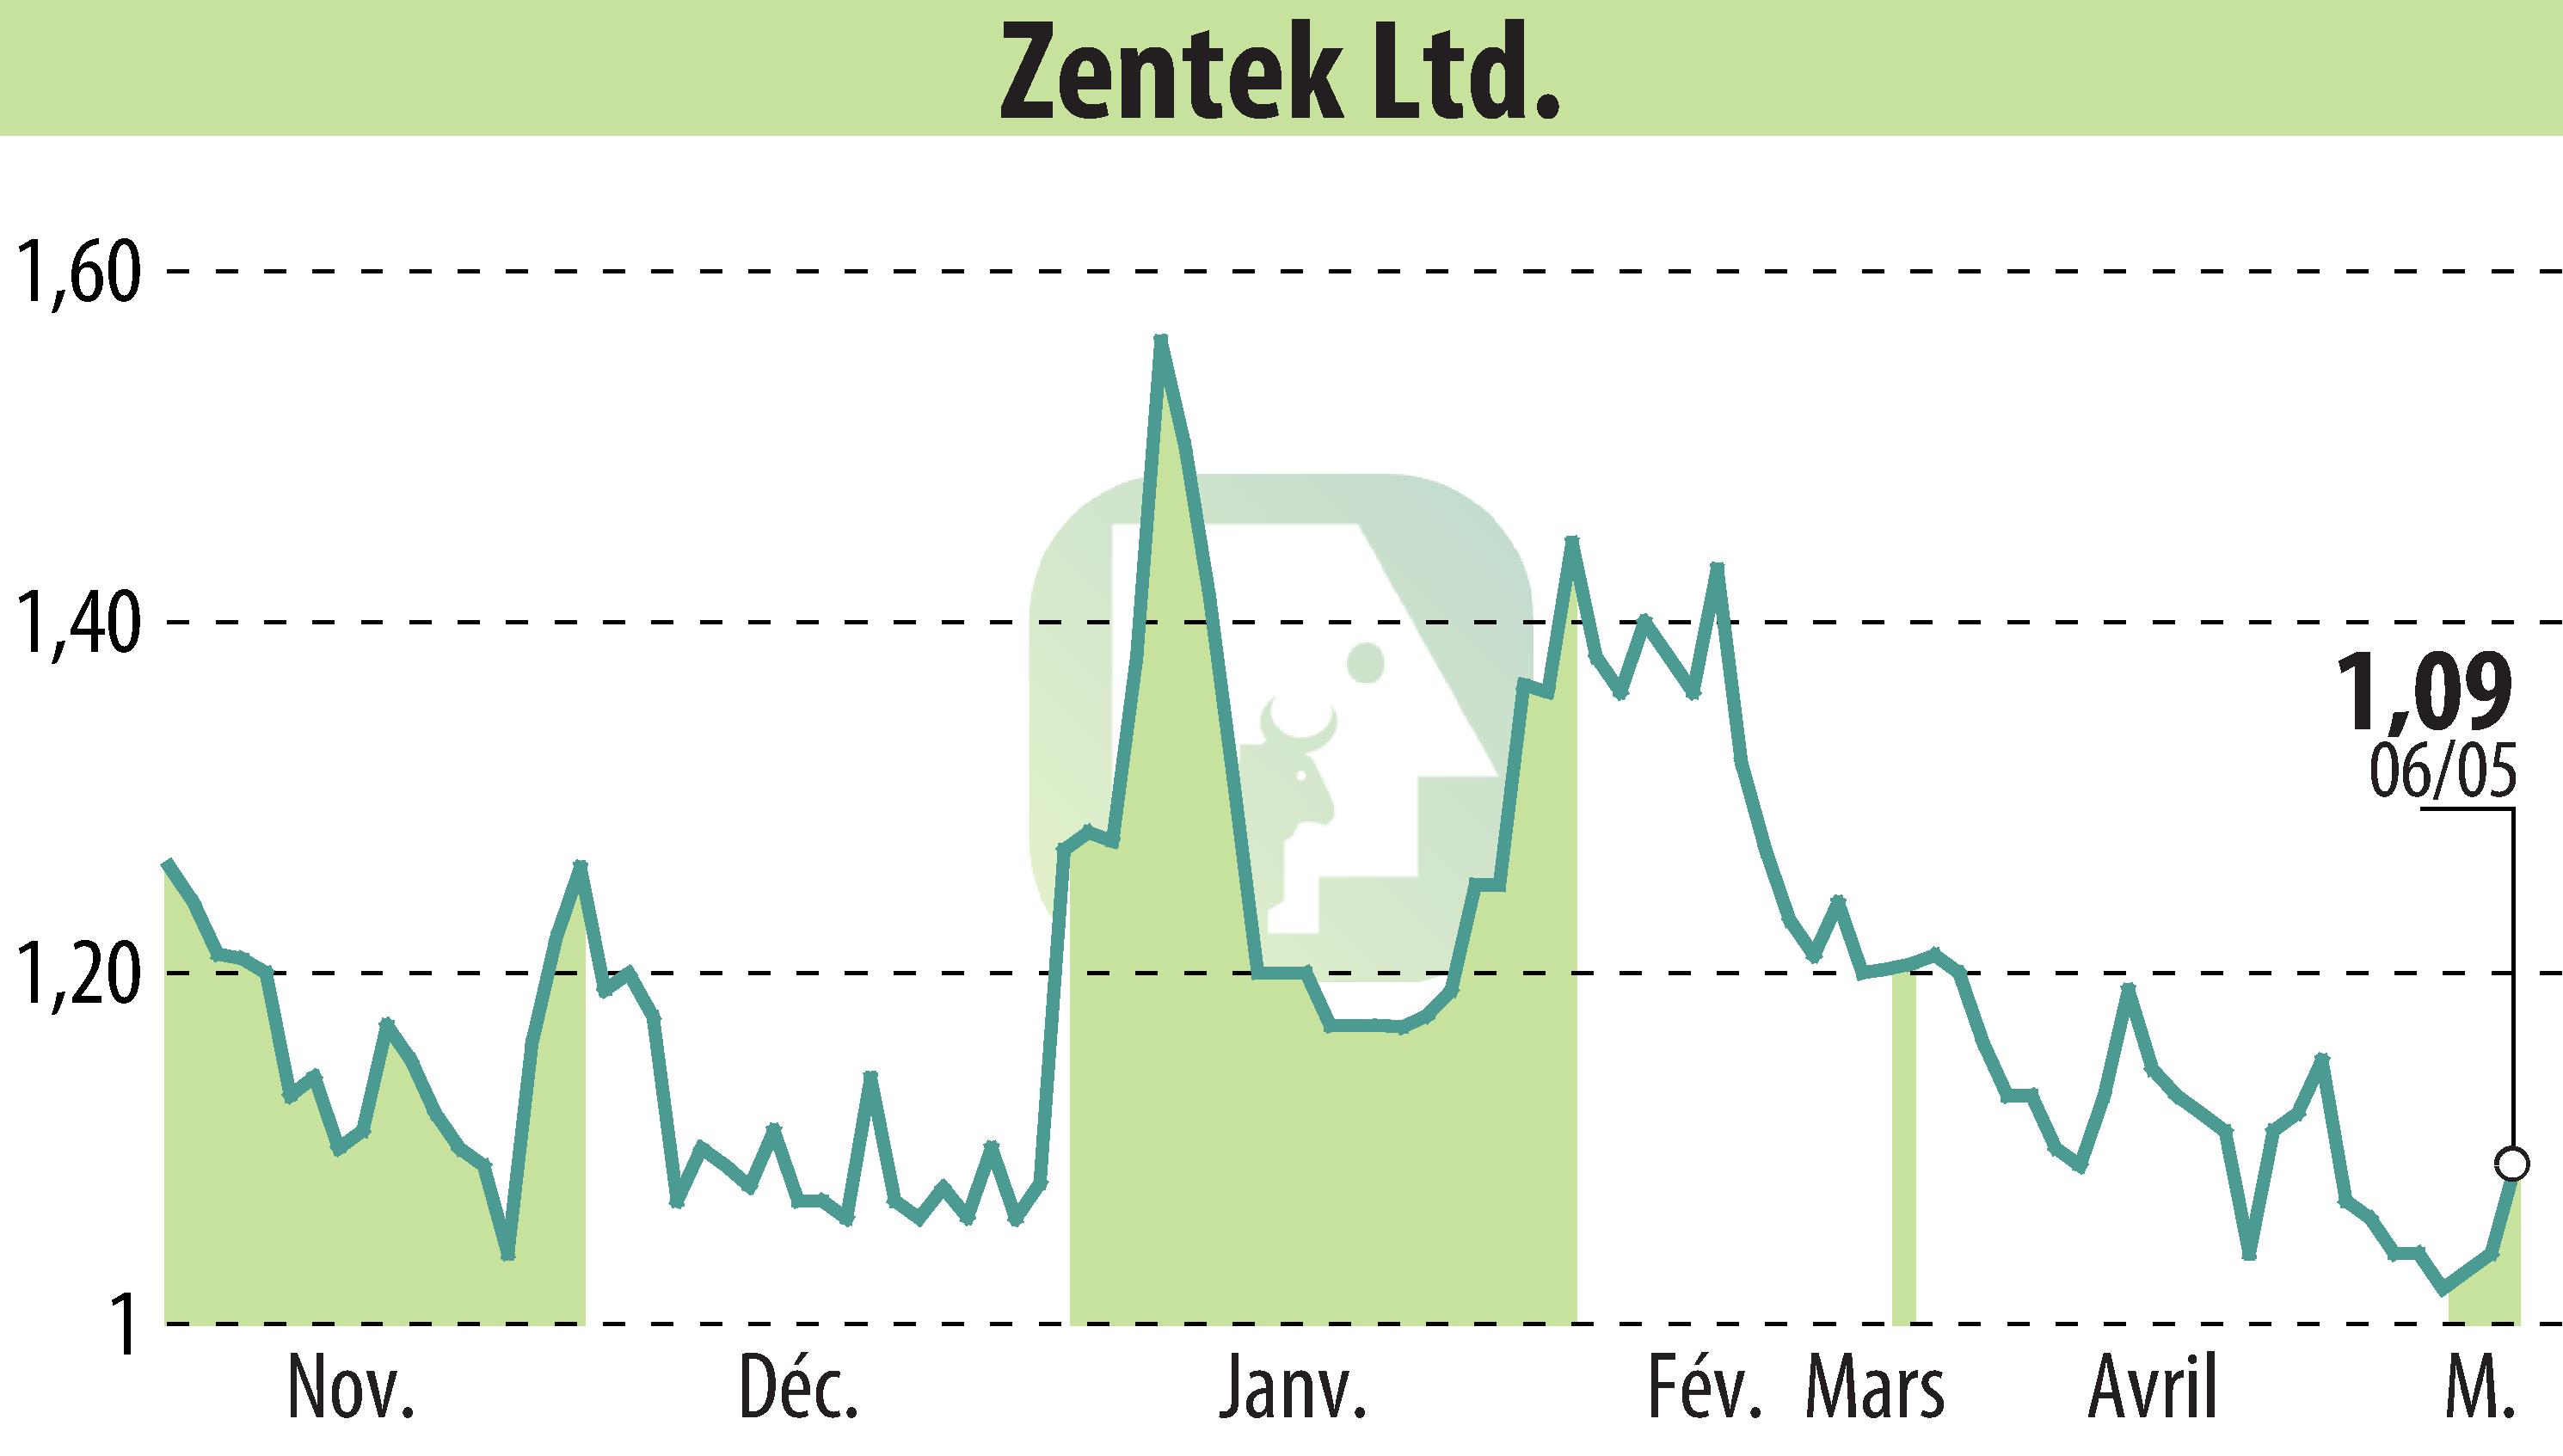 Stock price chart of Zentek Ltd. (EBR:ZTEK) showing fluctuations.